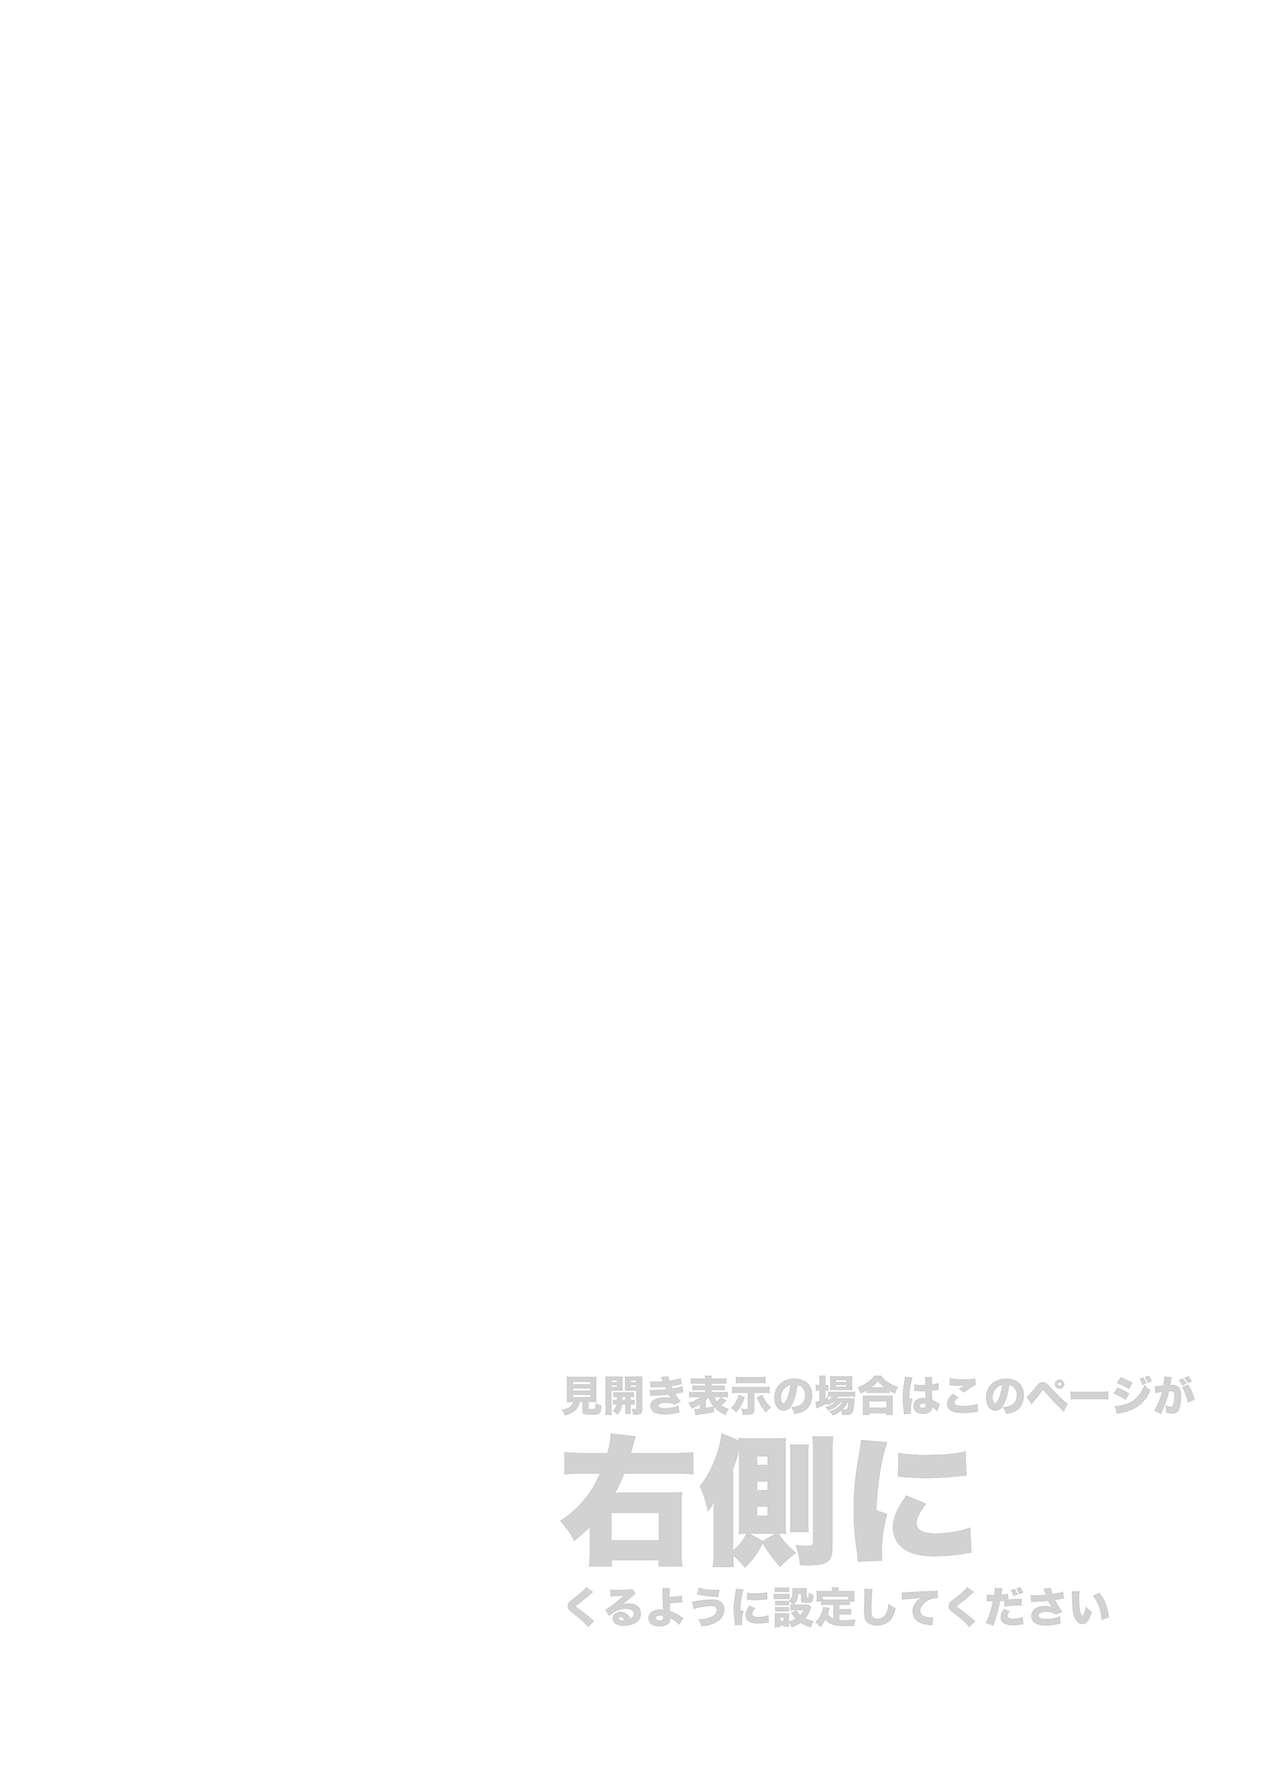 Sex Kore wa Kintore Nanda Honto dayo Shinjite - Mobile suit gundam tekketsu no orphans Gordibuena - Page 2